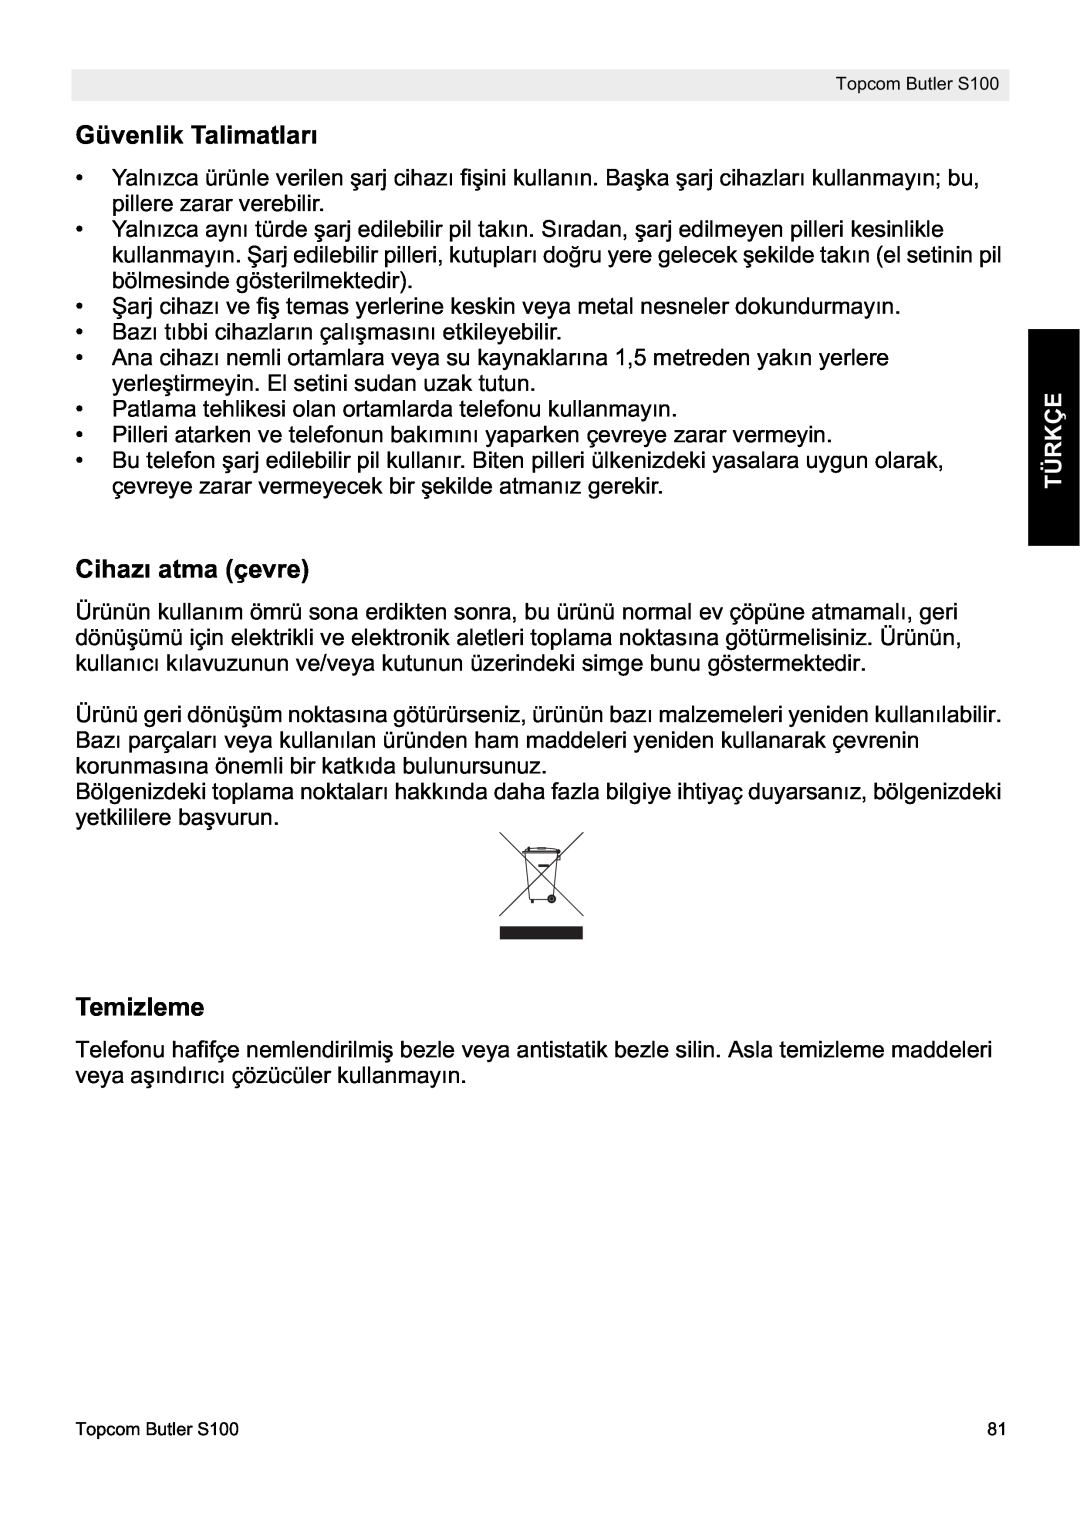 Topcom S100 manual do utilizador Güvenlik Talimatları, Cihazı atma çevre, Temizleme, Türkçe 